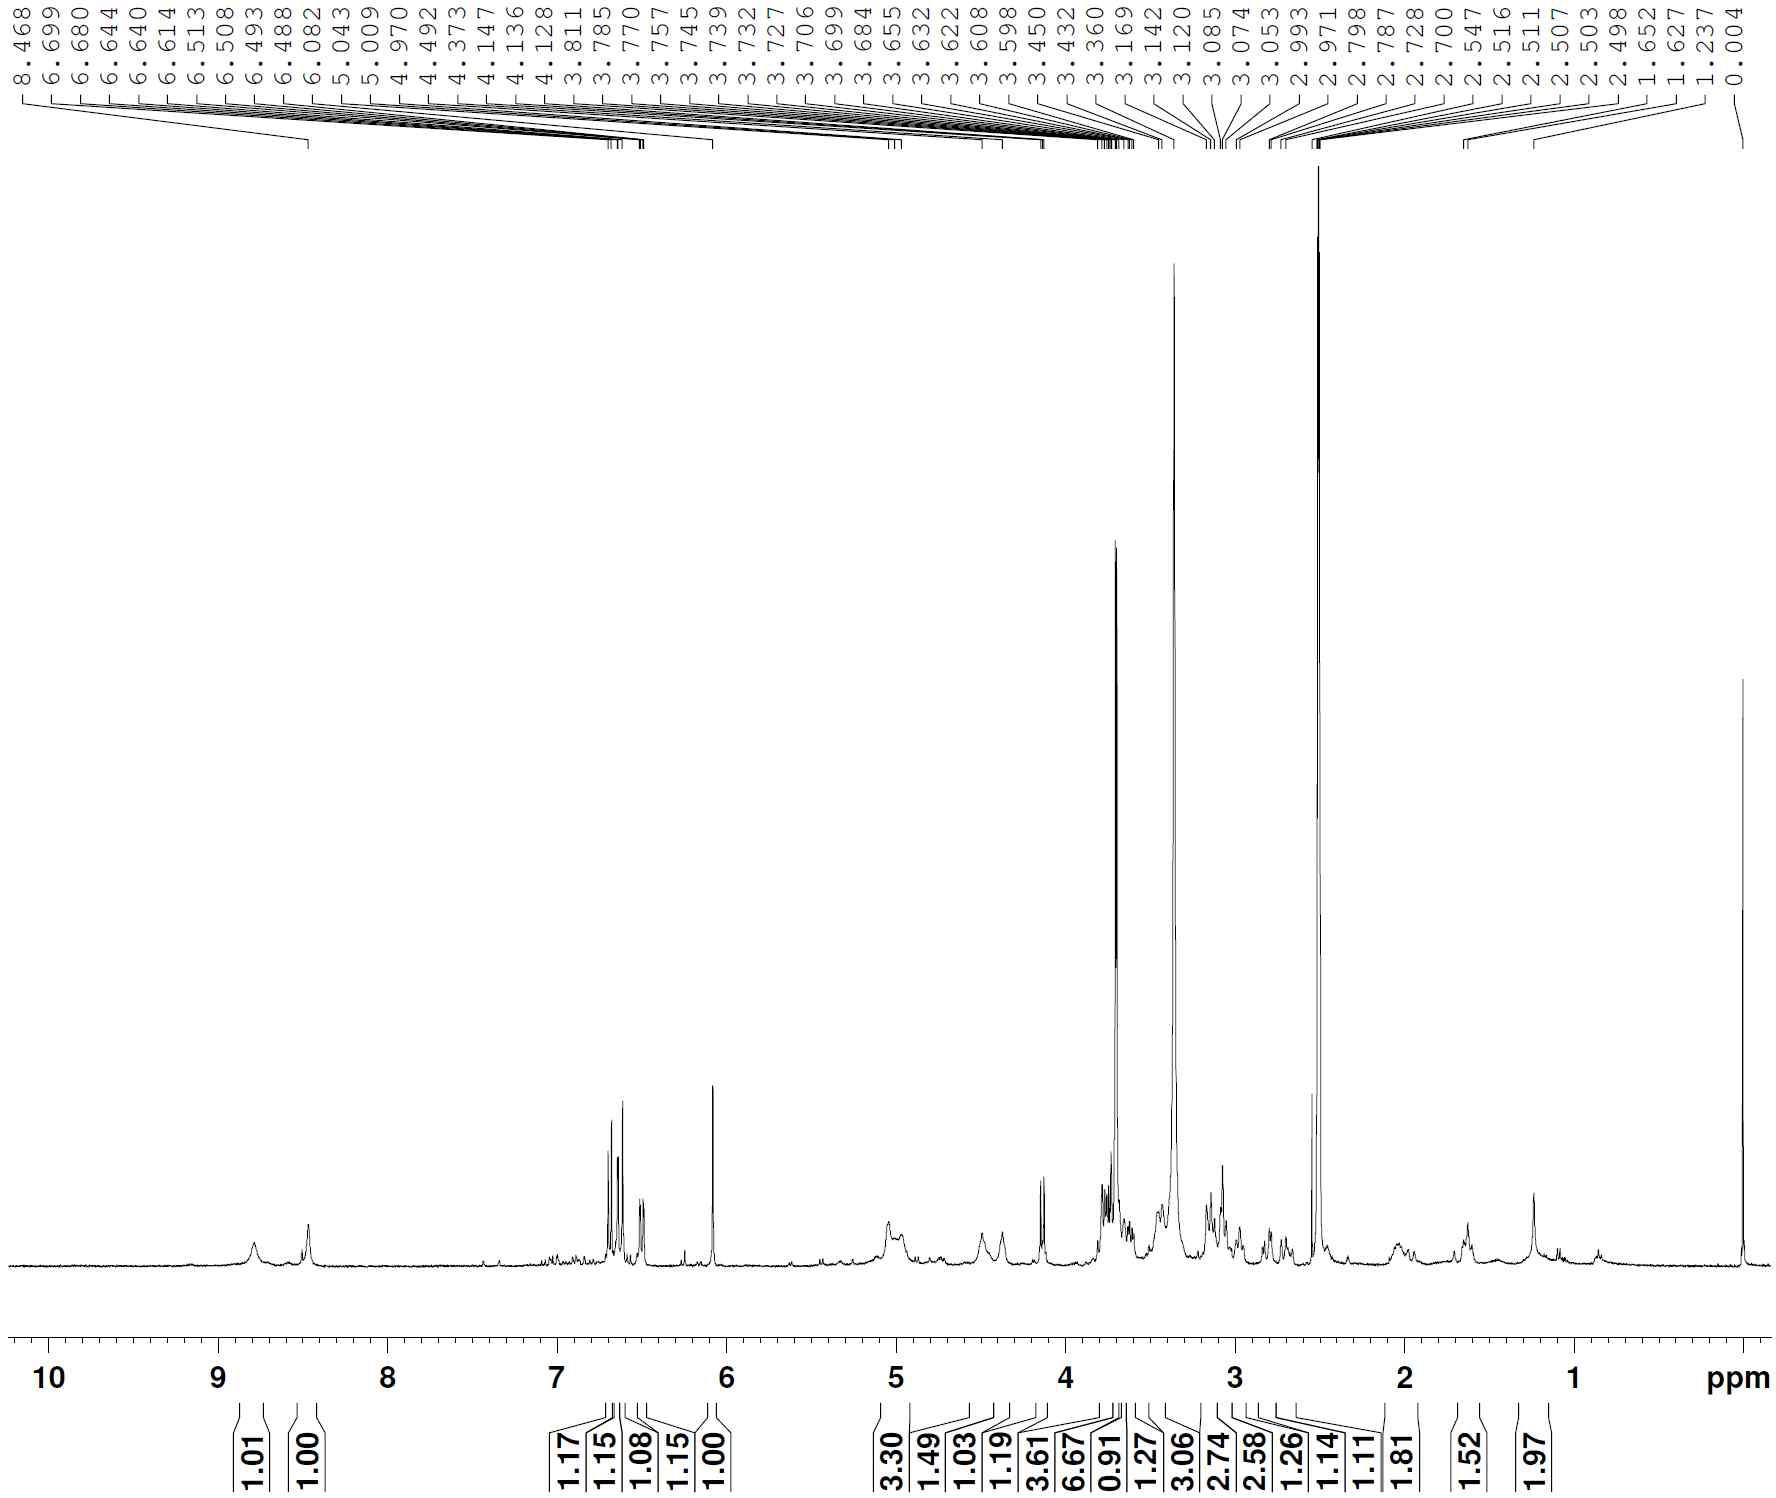 1H-NMR spectrum of compound 7